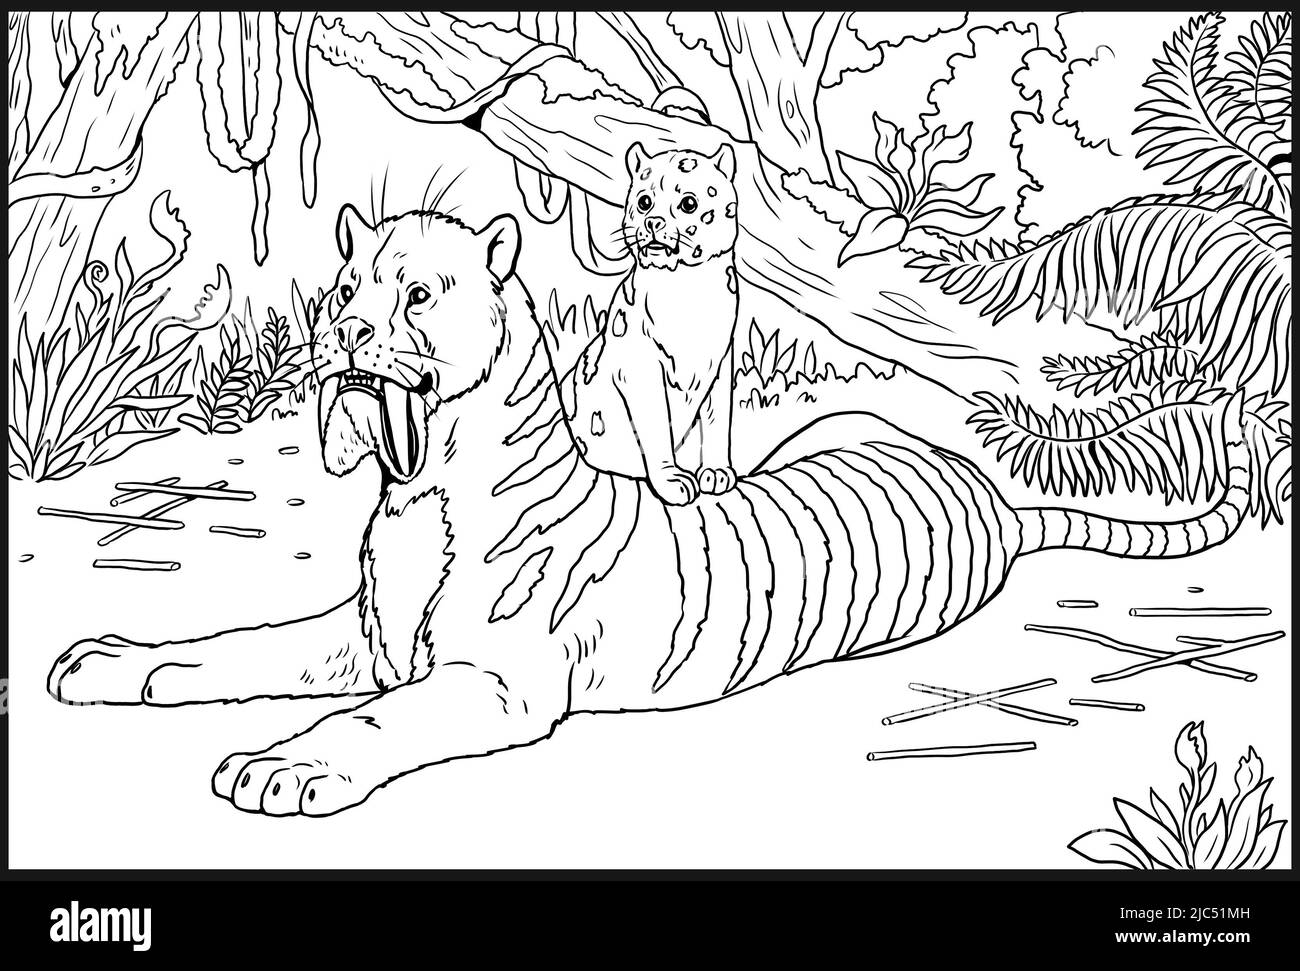 Prédateurs préhistoriques - thylacosmilus avec cub. Dessin avec un prédateur félin éteint. Modèle pour livre de coloriage avec sabre-tooth. Banque D'Images